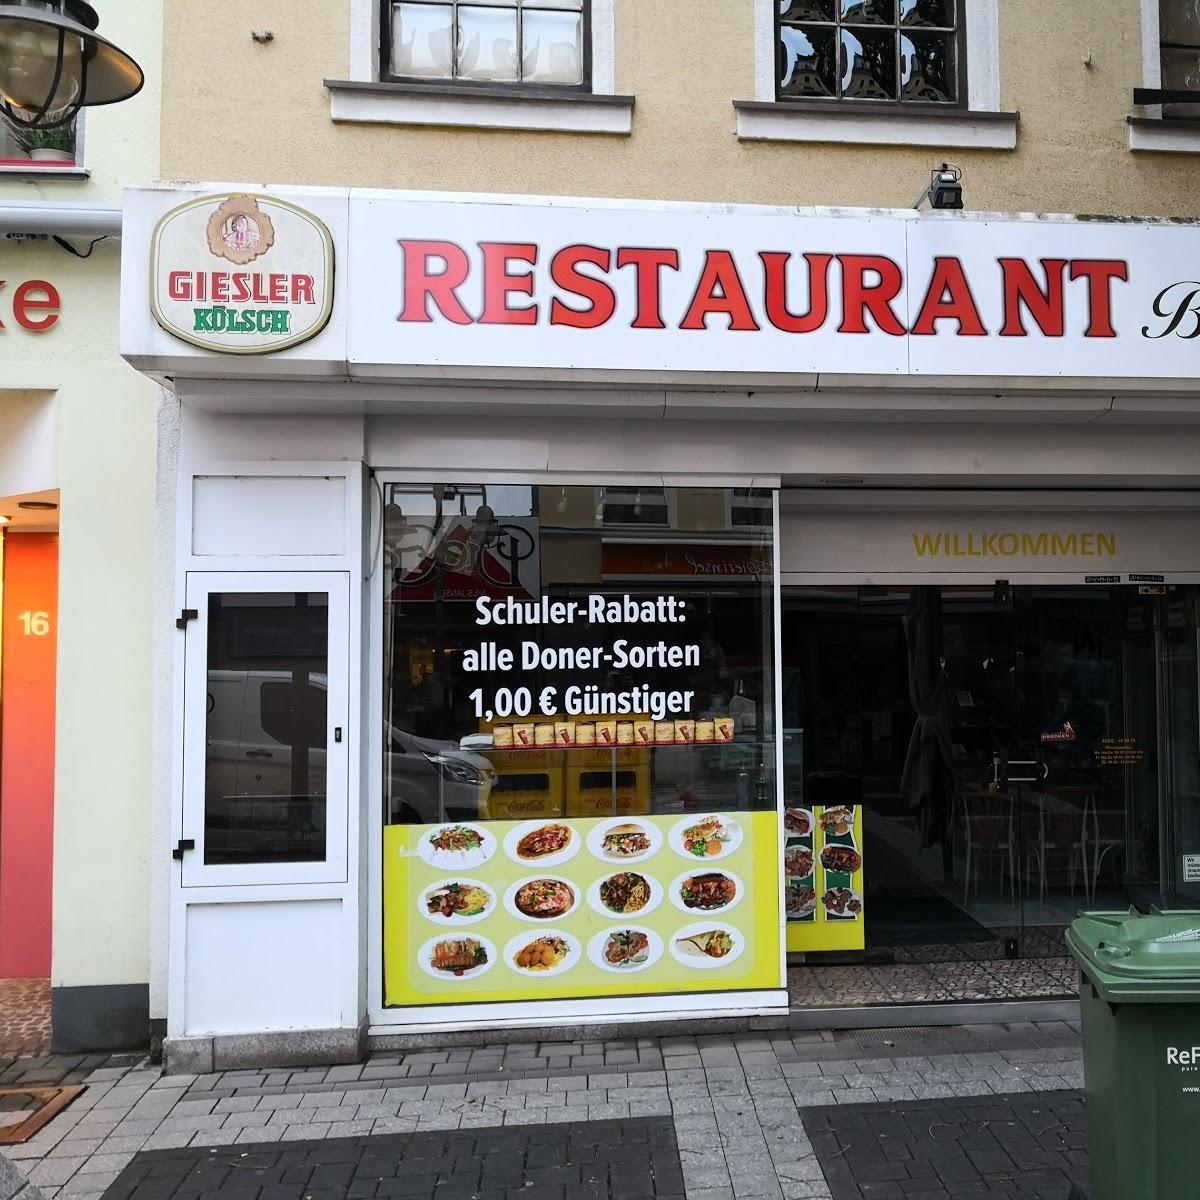 Restaurant "Bodrum Restaurant" in Brühl